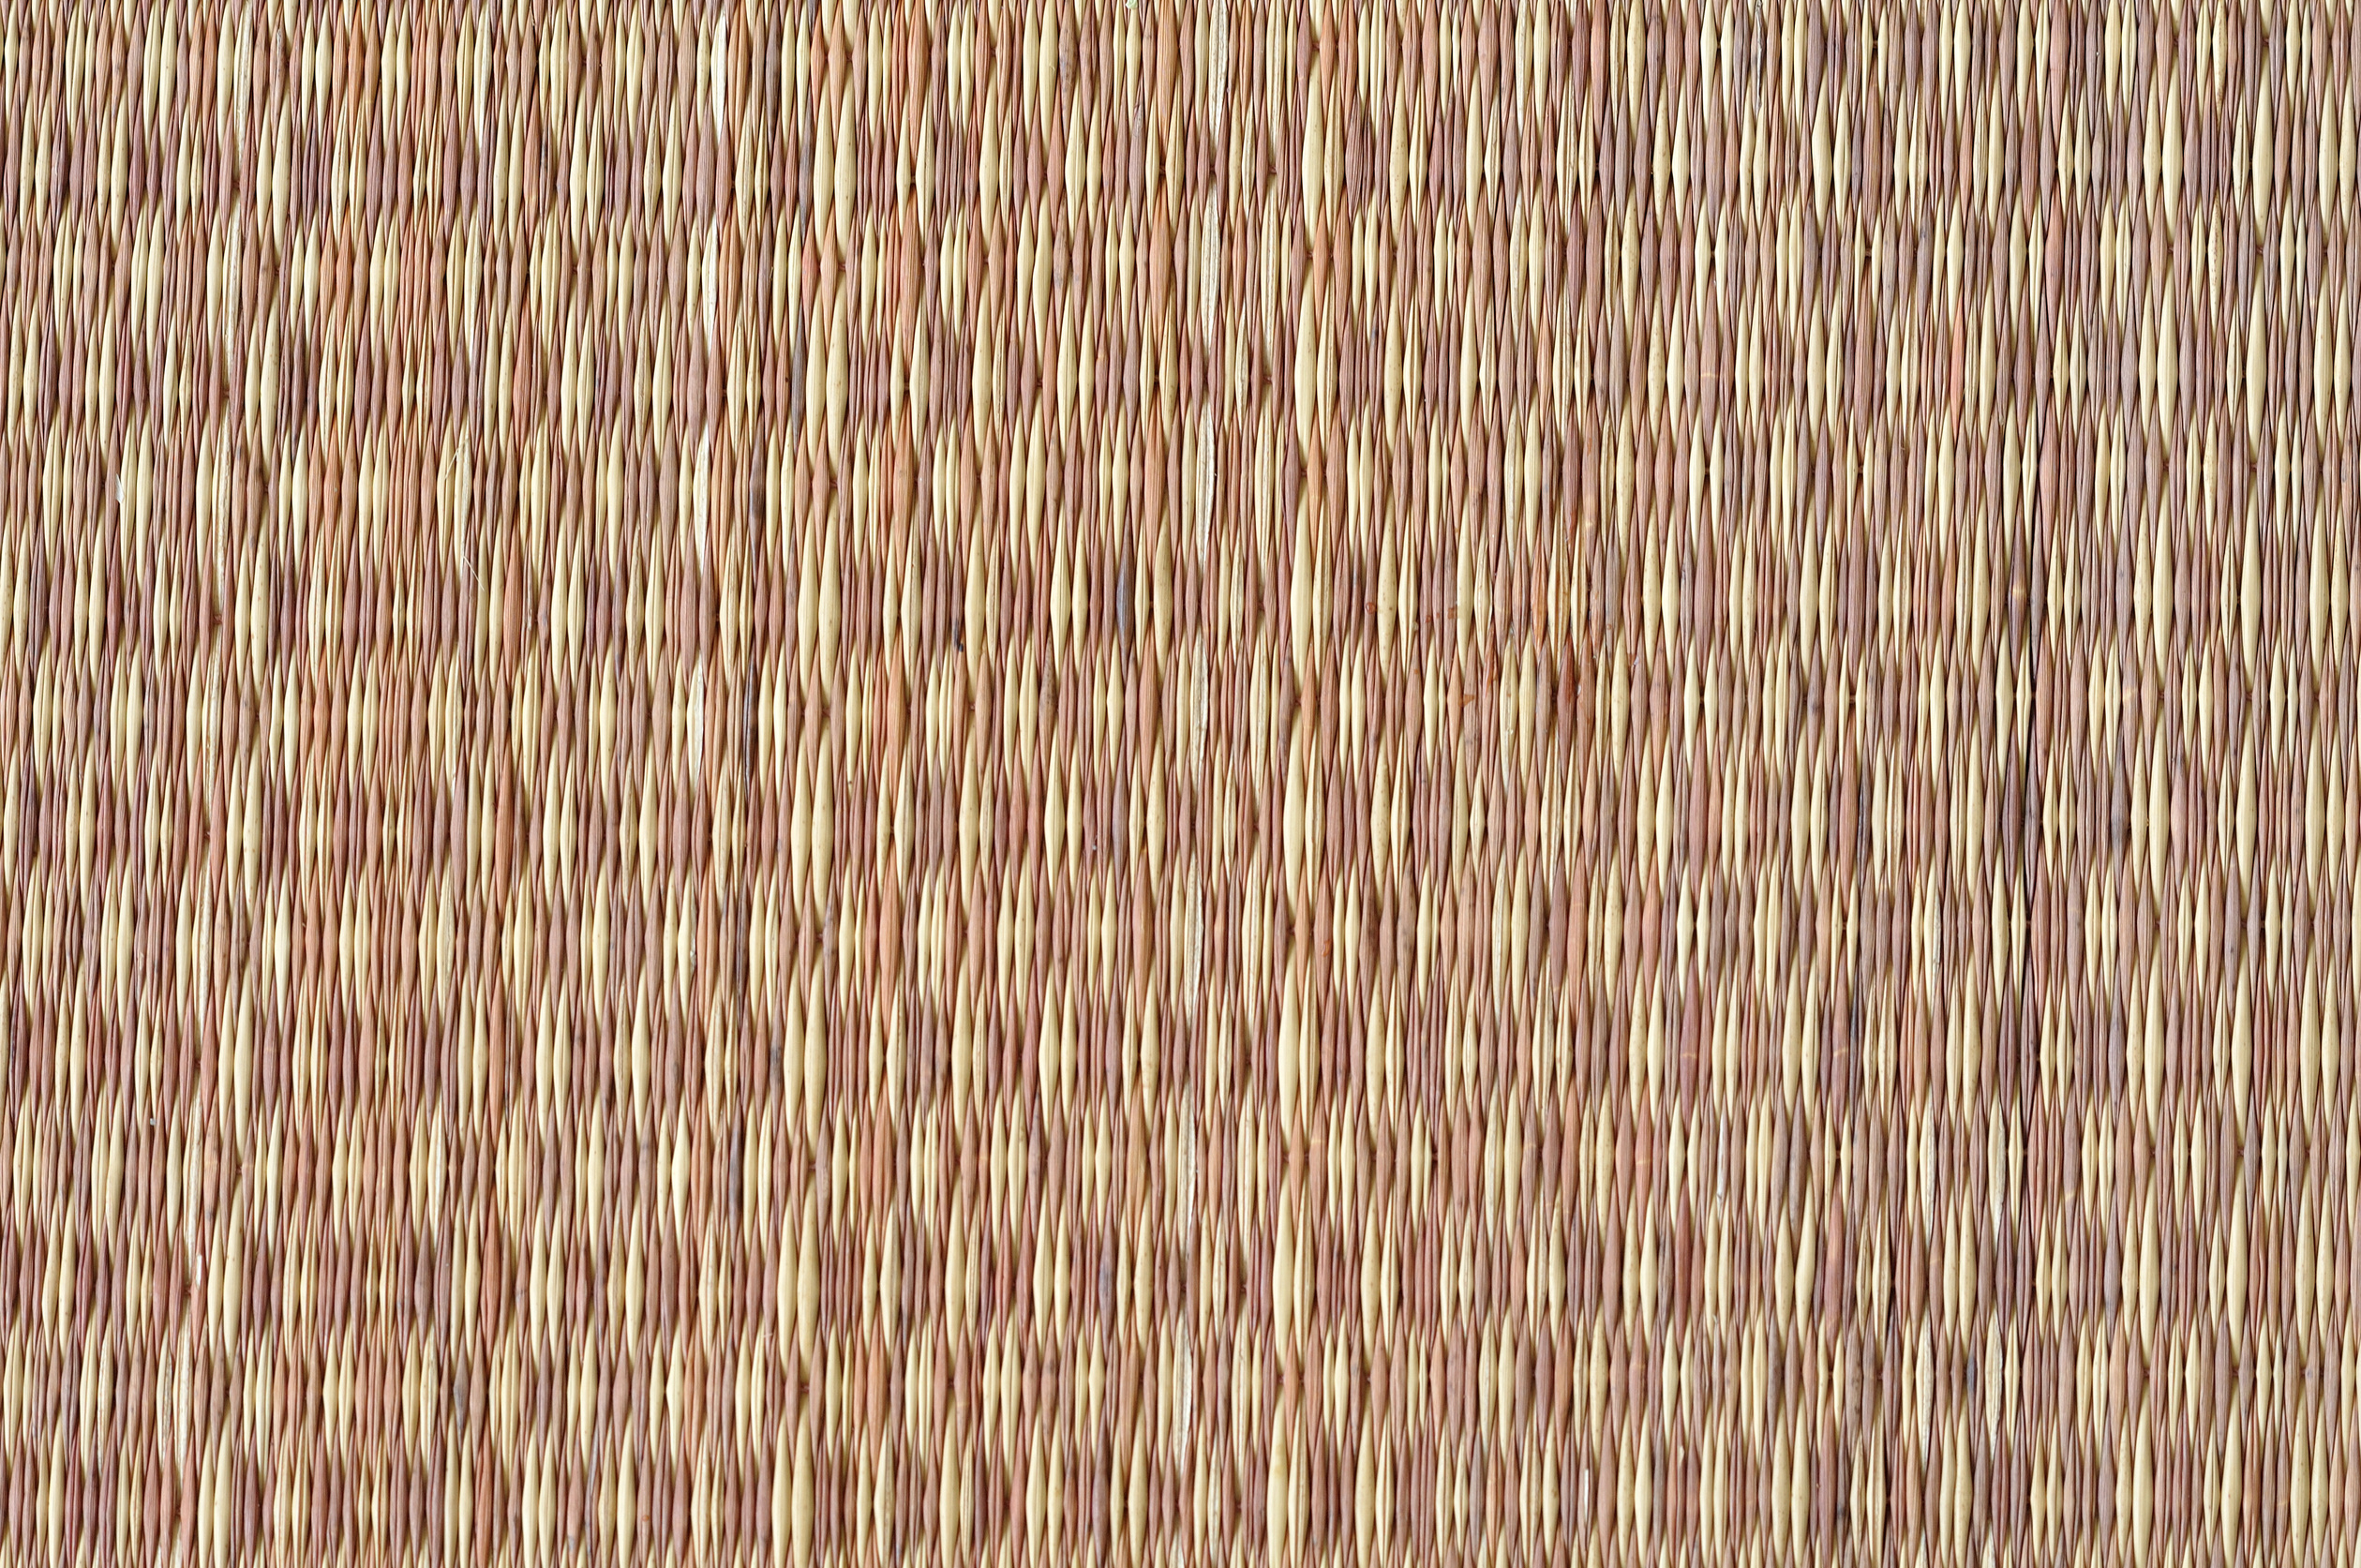 Thai native weave mat